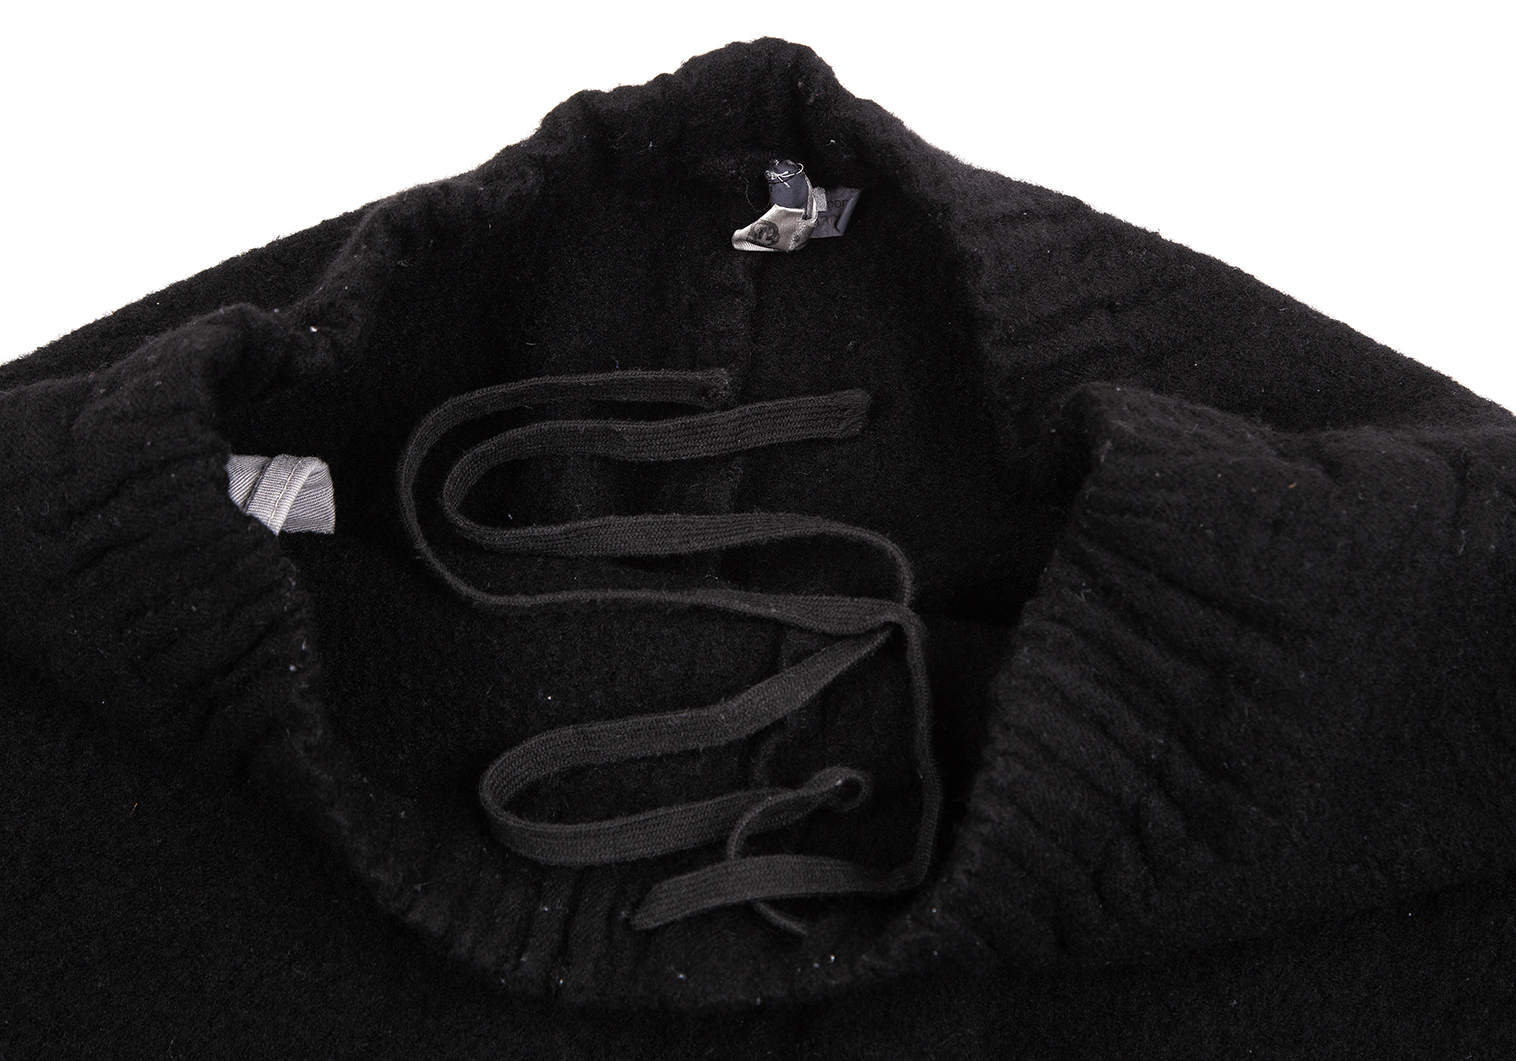 BLACK COMME des GARCONSブラックコムデギャルソン 縮絨ウール 裾カットデザインパンツ【L】【LPTA71777】パンツ